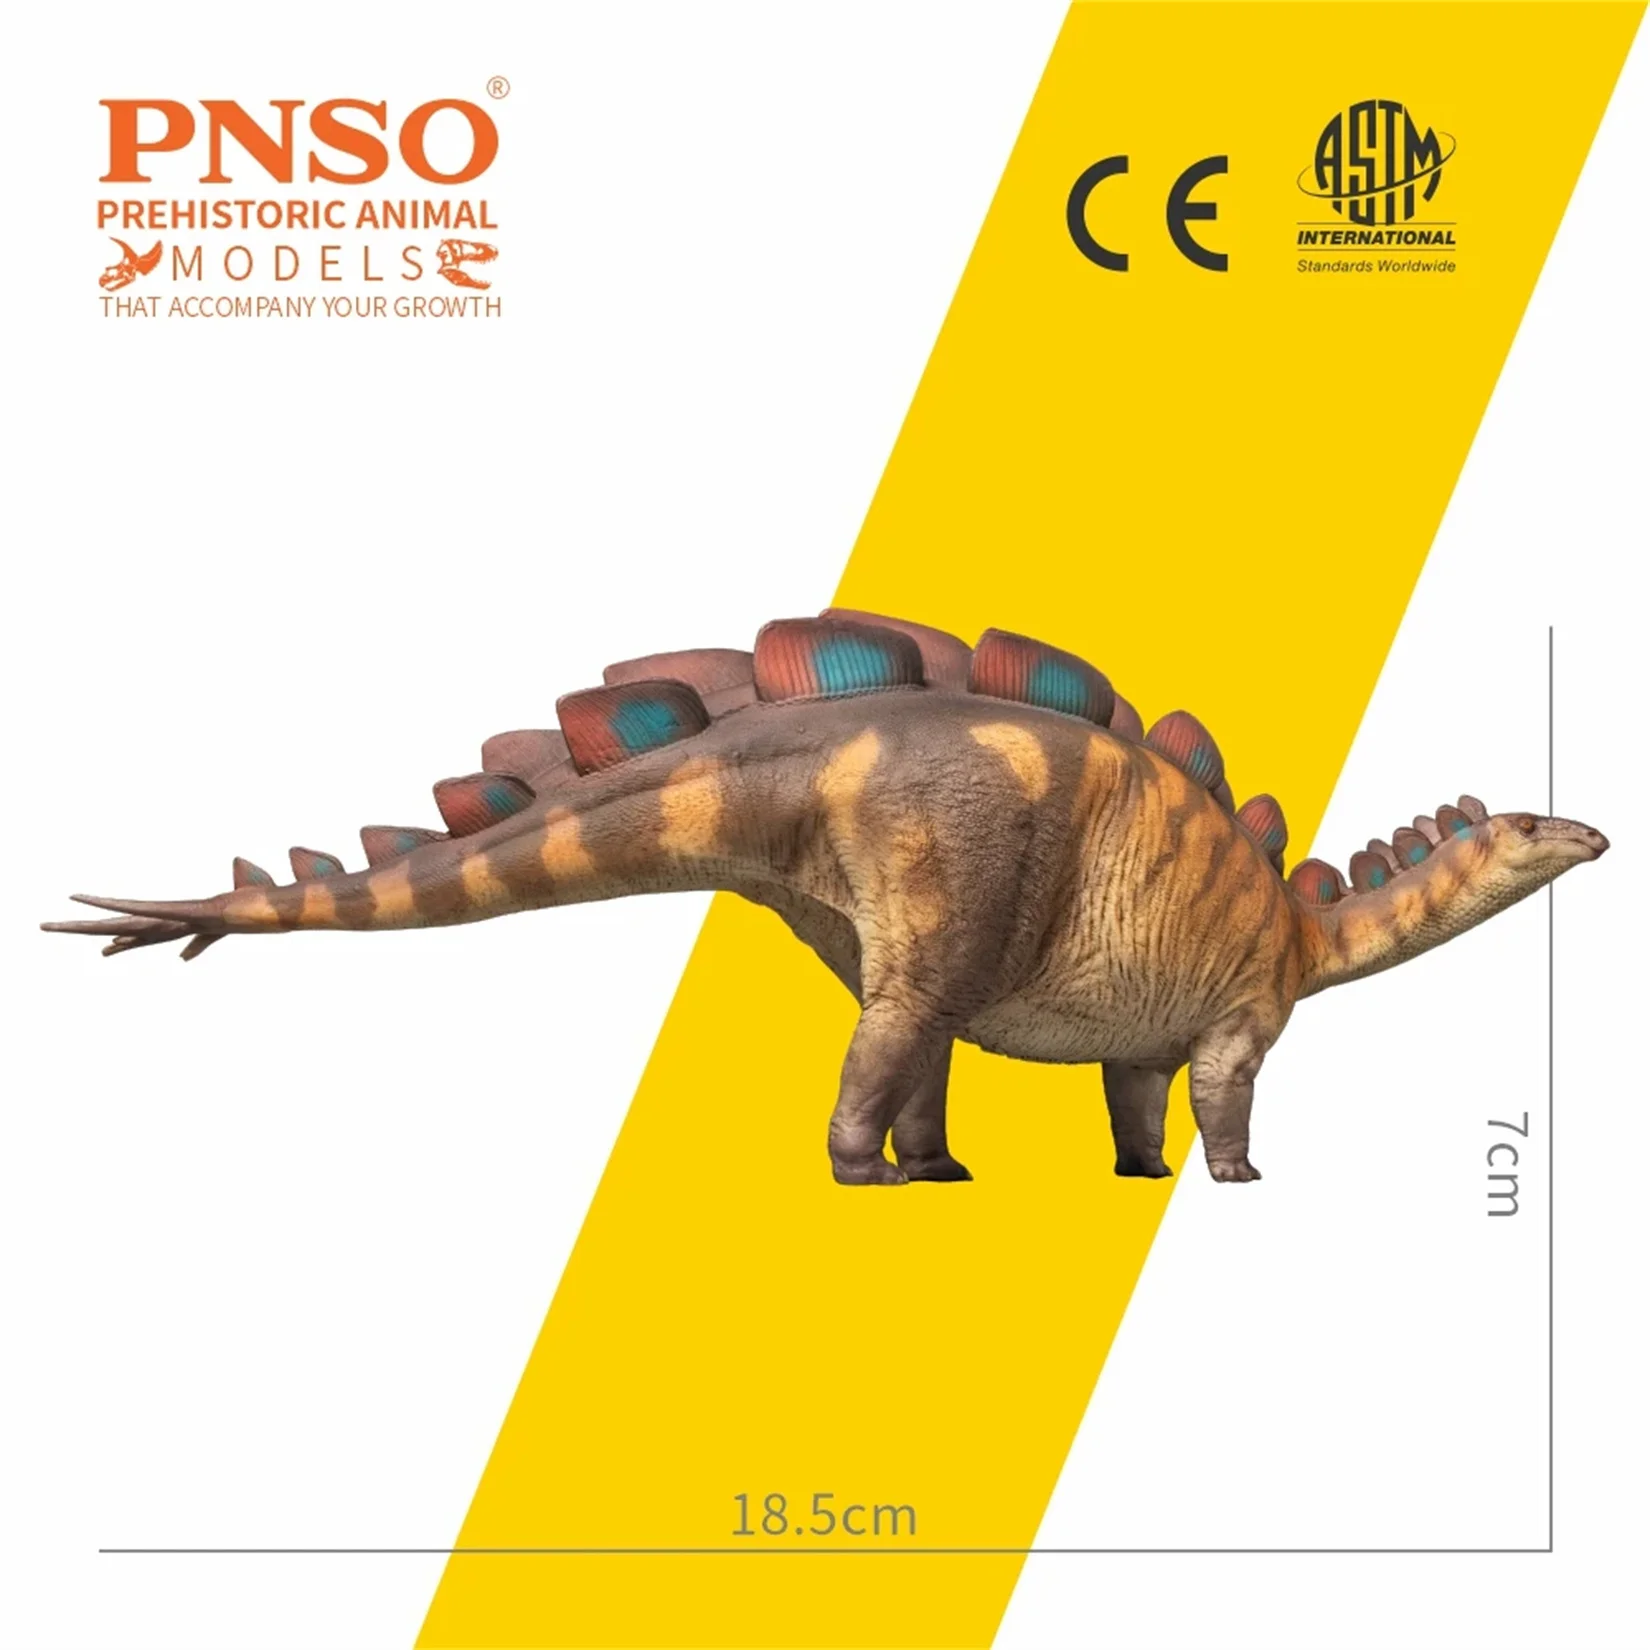 Pnso-恐竜のモデルsteosururance、恐竜先史時代の動物のシーン、装飾ギフトコレクション、科学像、82